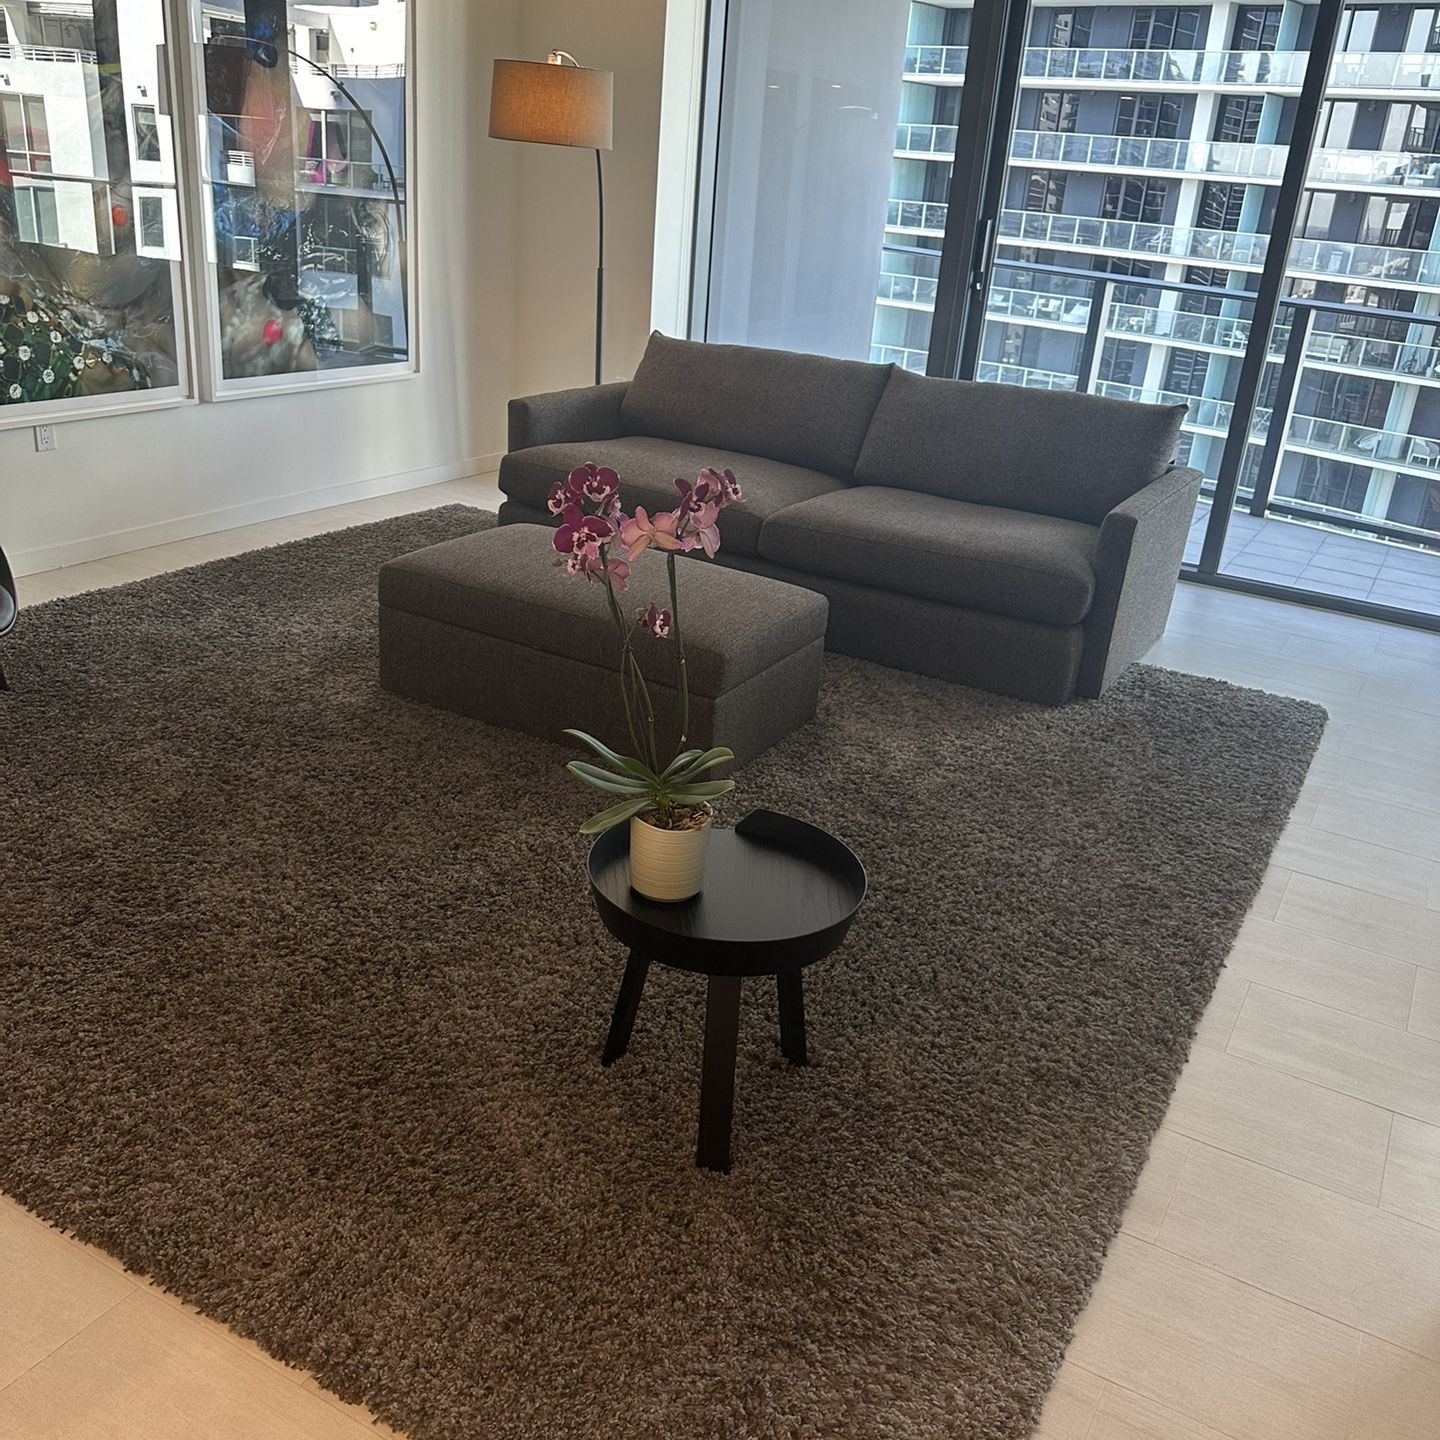 Living Room Set, Sofa, Ottoman, and Area Rug